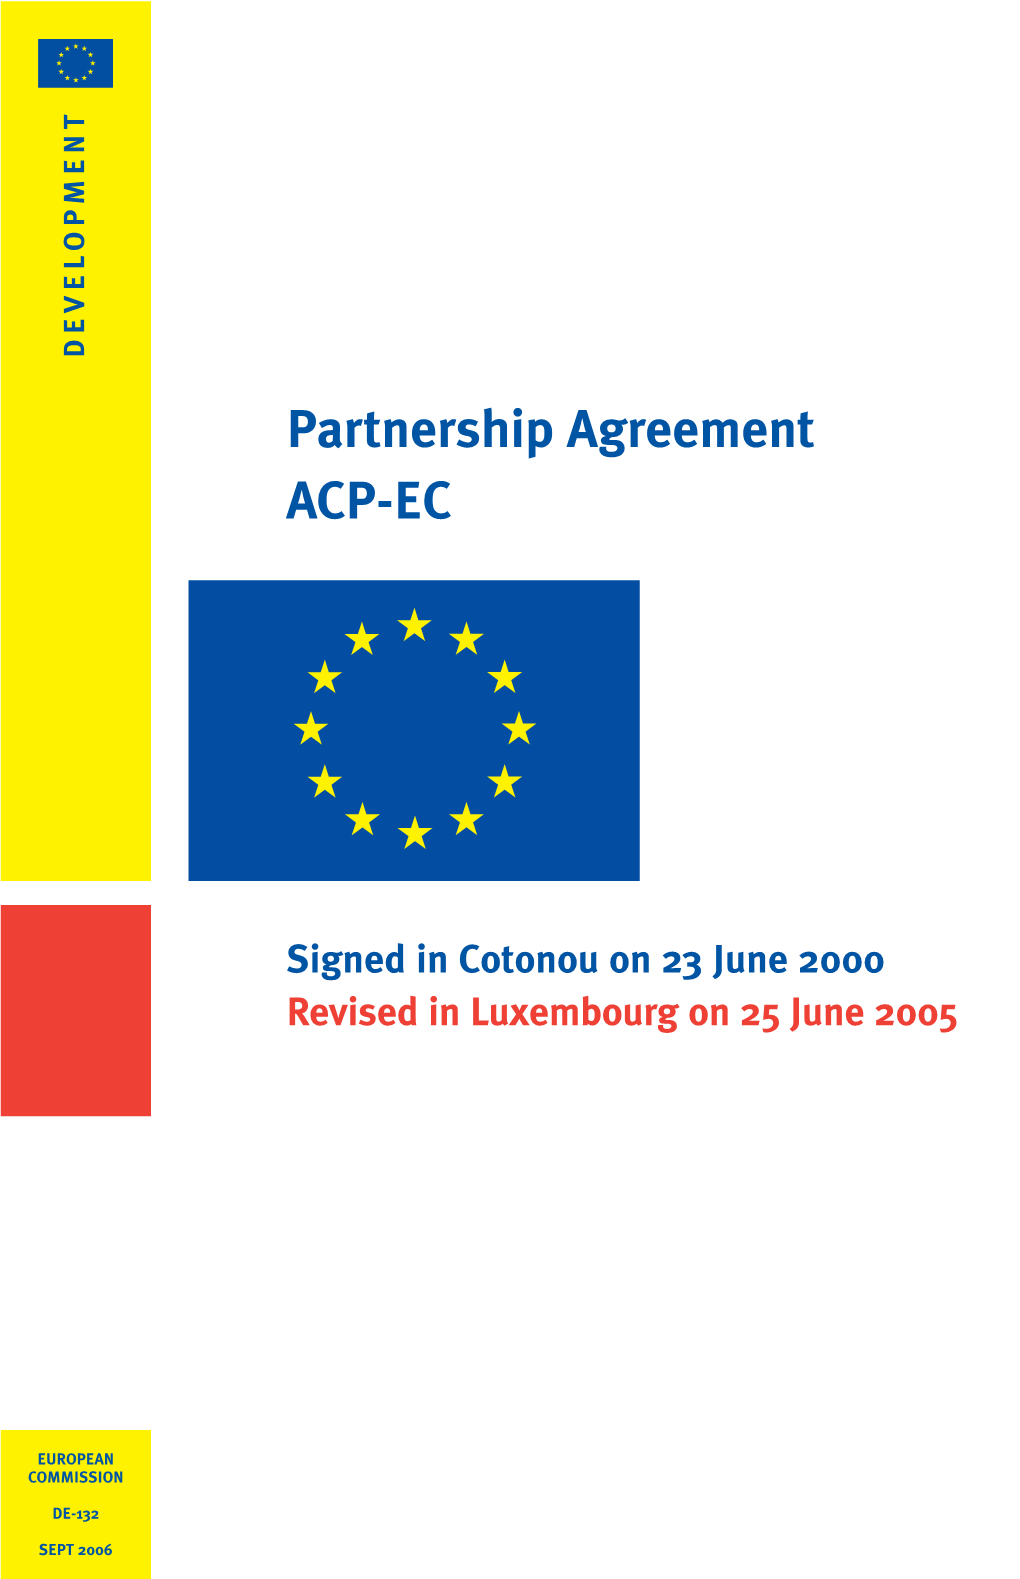 Revised Cotonou Agreement (2005)